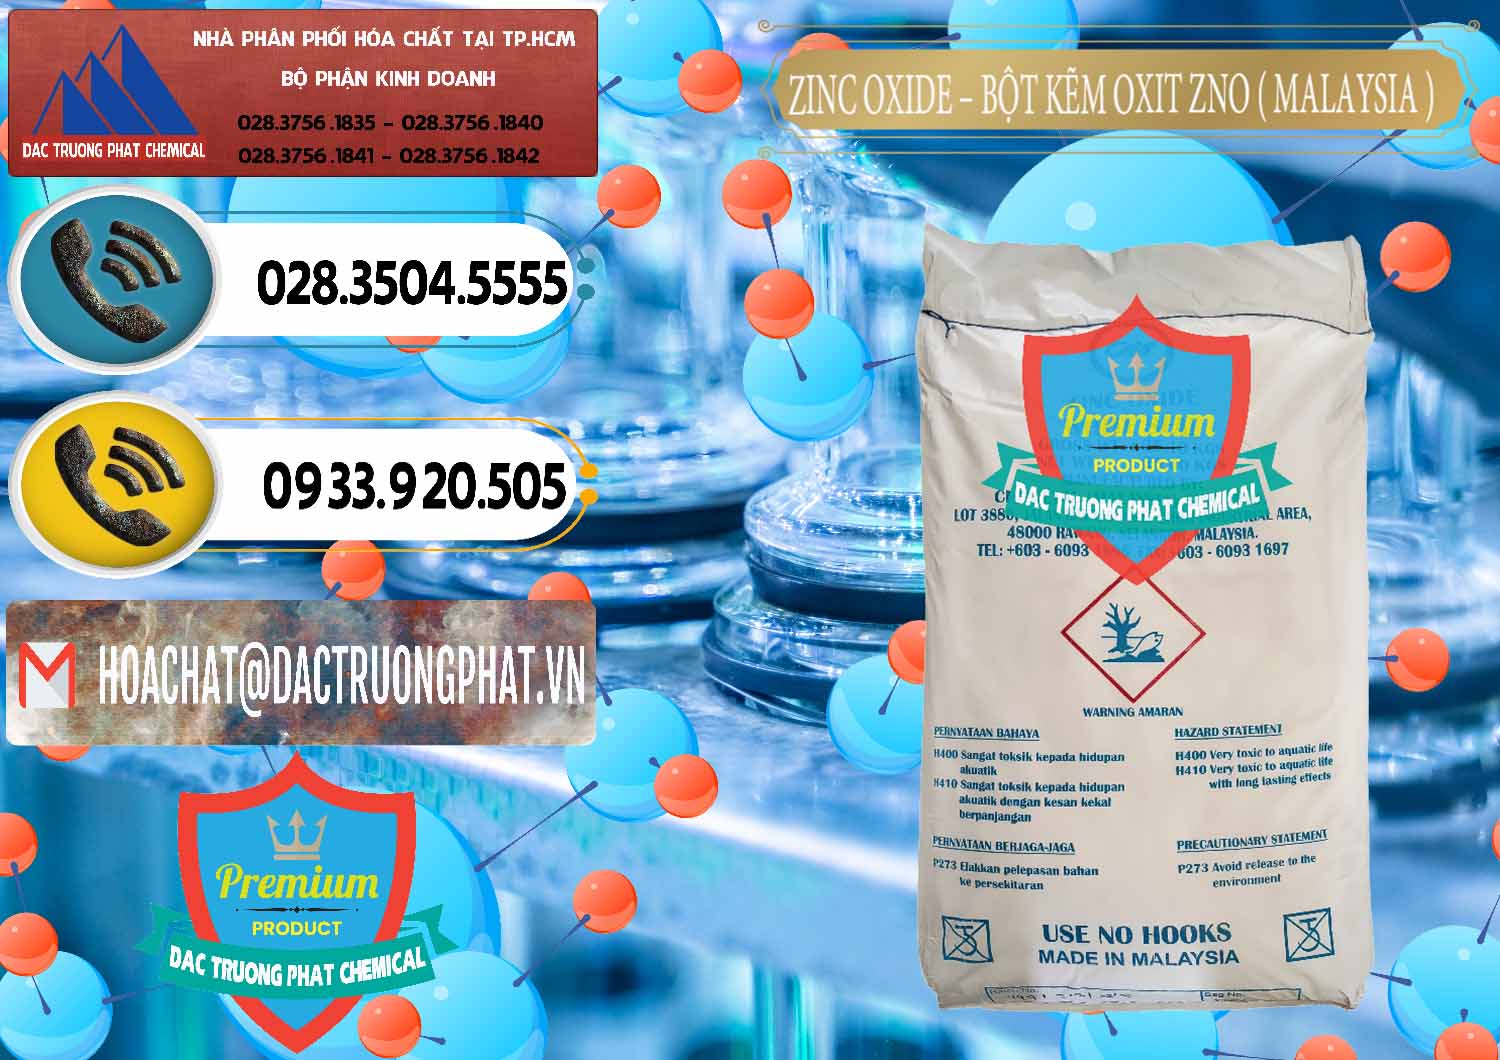 Chuyên nhập khẩu và bán Zinc Oxide - Bột Kẽm Oxit ZNO Malaysia - 0179 - Nơi chuyên bán và phân phối hóa chất tại TP.HCM - hoachatdetnhuom.vn